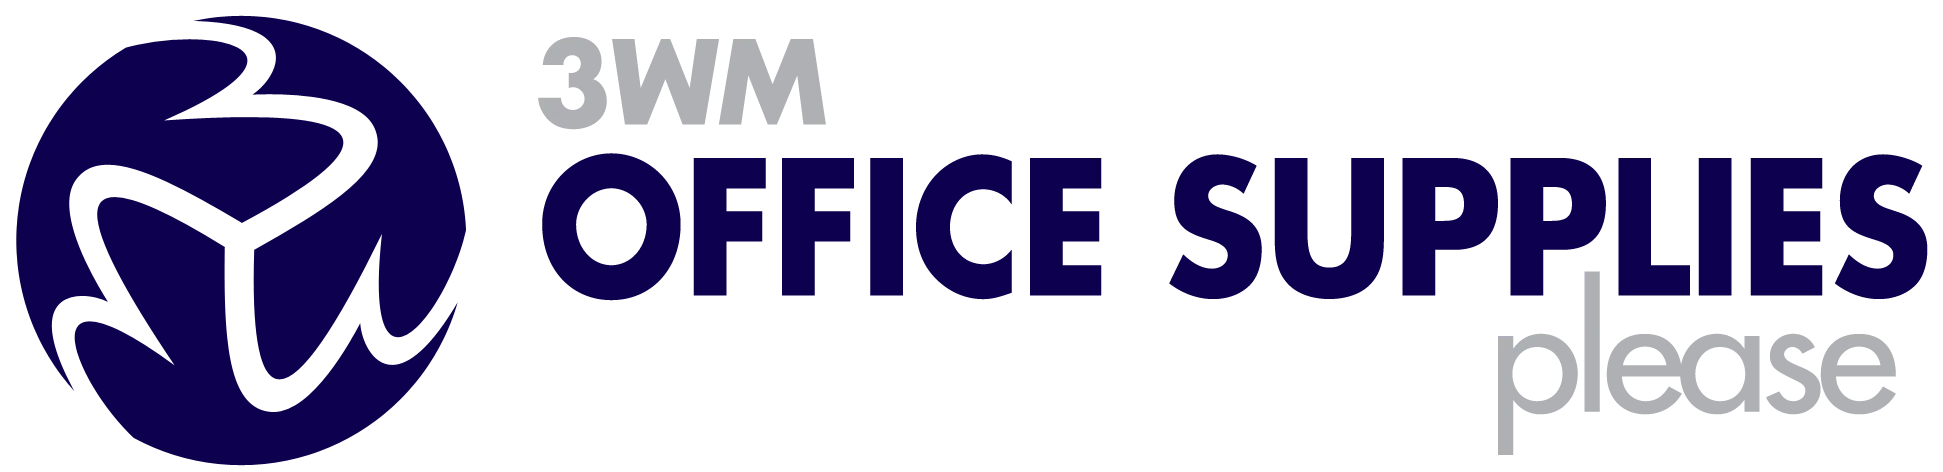 3Wm Office Supplies Discount Codes & Voucher Codes